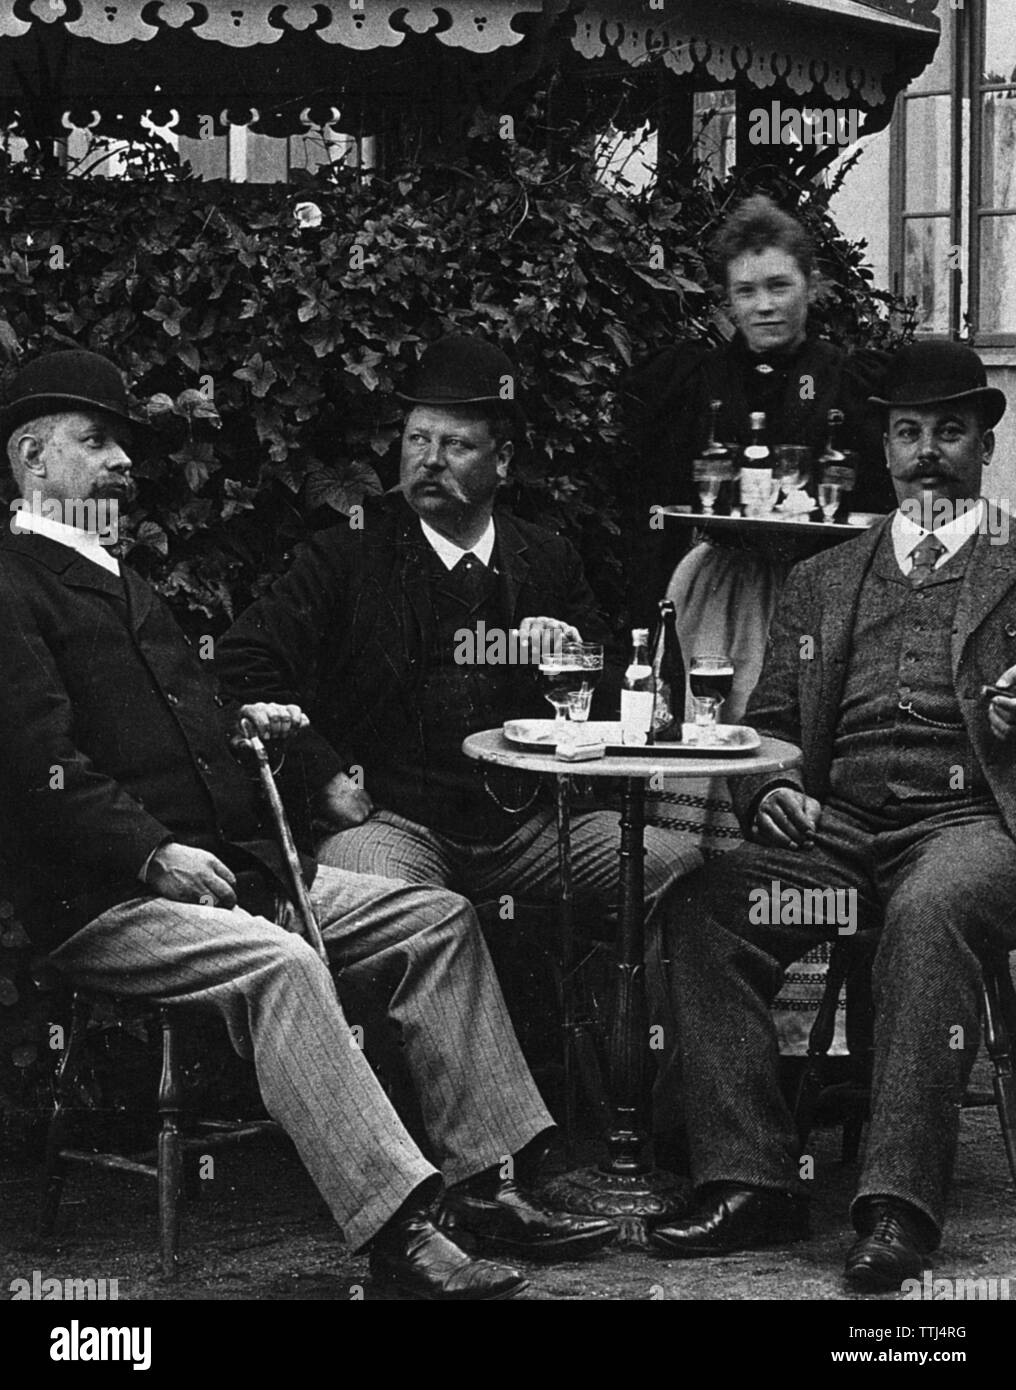 Le mode de vie des hommes au début du 20ème siècle. Trois hommes sont assis à une table dans un restaurant bénéficiant d''un verre de bière. Ils sont tous trois généralement bien habillé et chapeaux sont sur. Suède 1800-1900 BV67-3 Banque D'Images